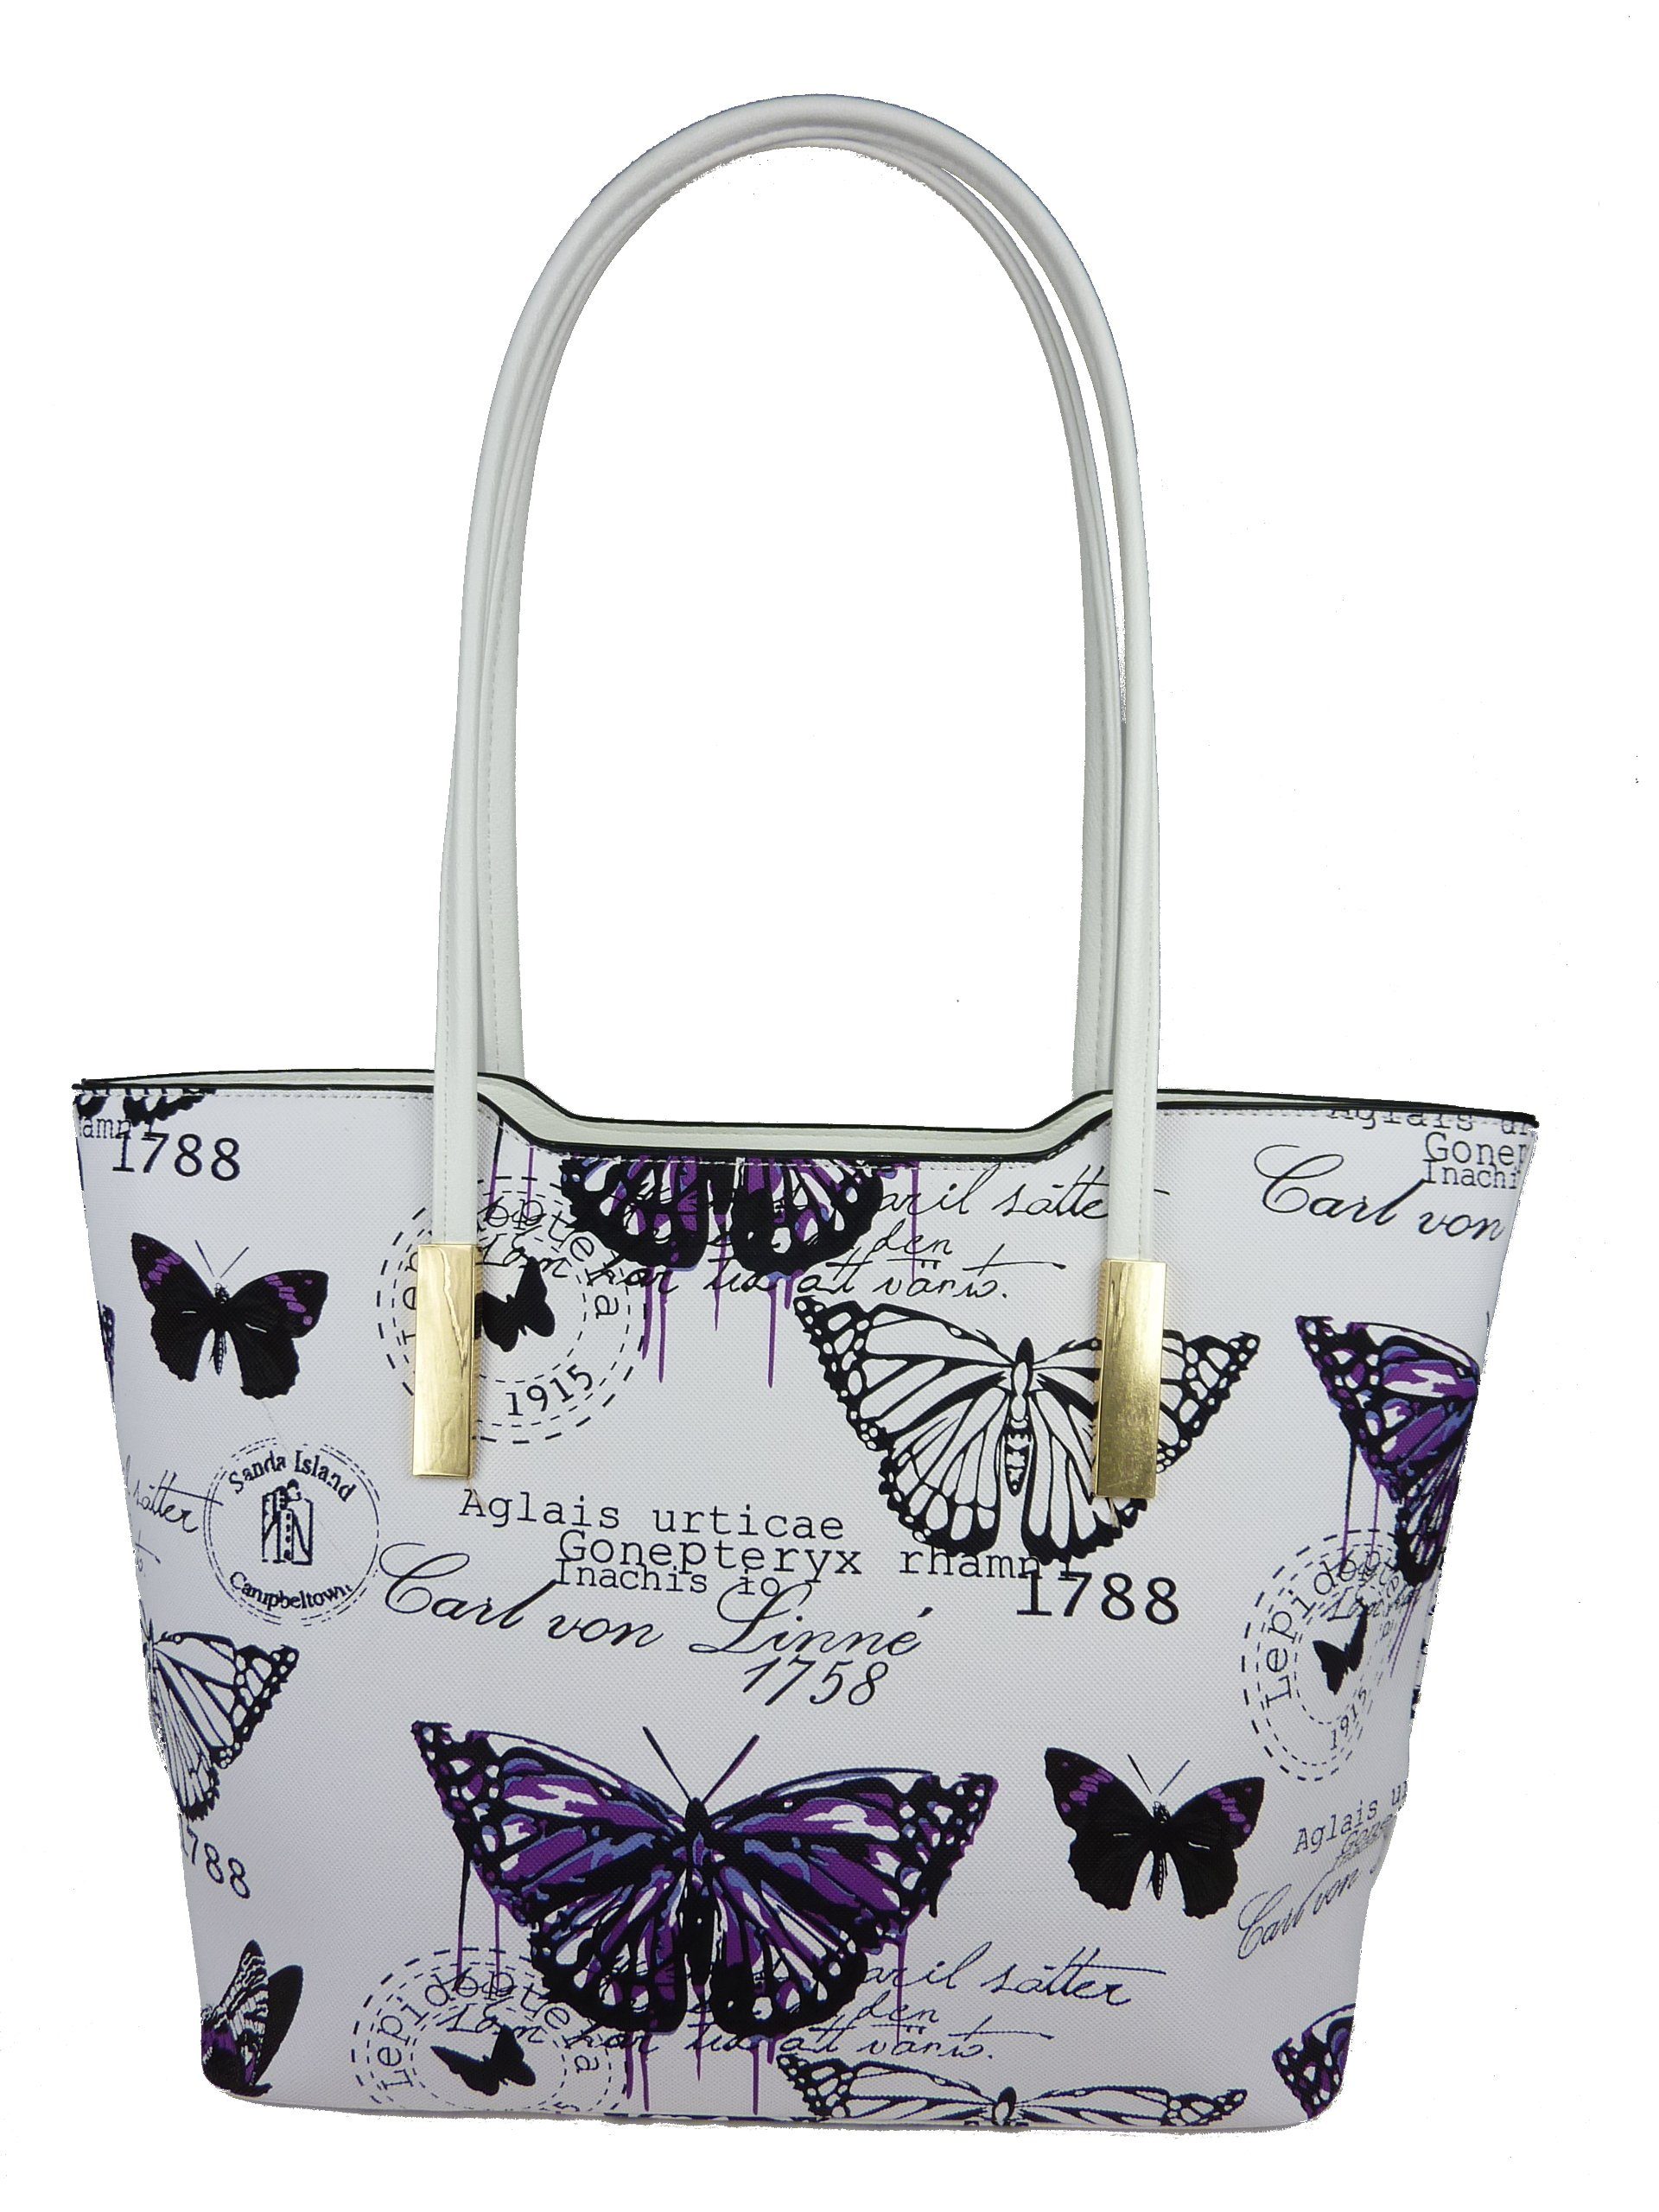 Taschen4life Henkeltasche große Damen Shopper Sommertasche Butterfly 1803, mehrfarbig im Vintage Stil, Schmetterling retro Motive, lange Henkel lila